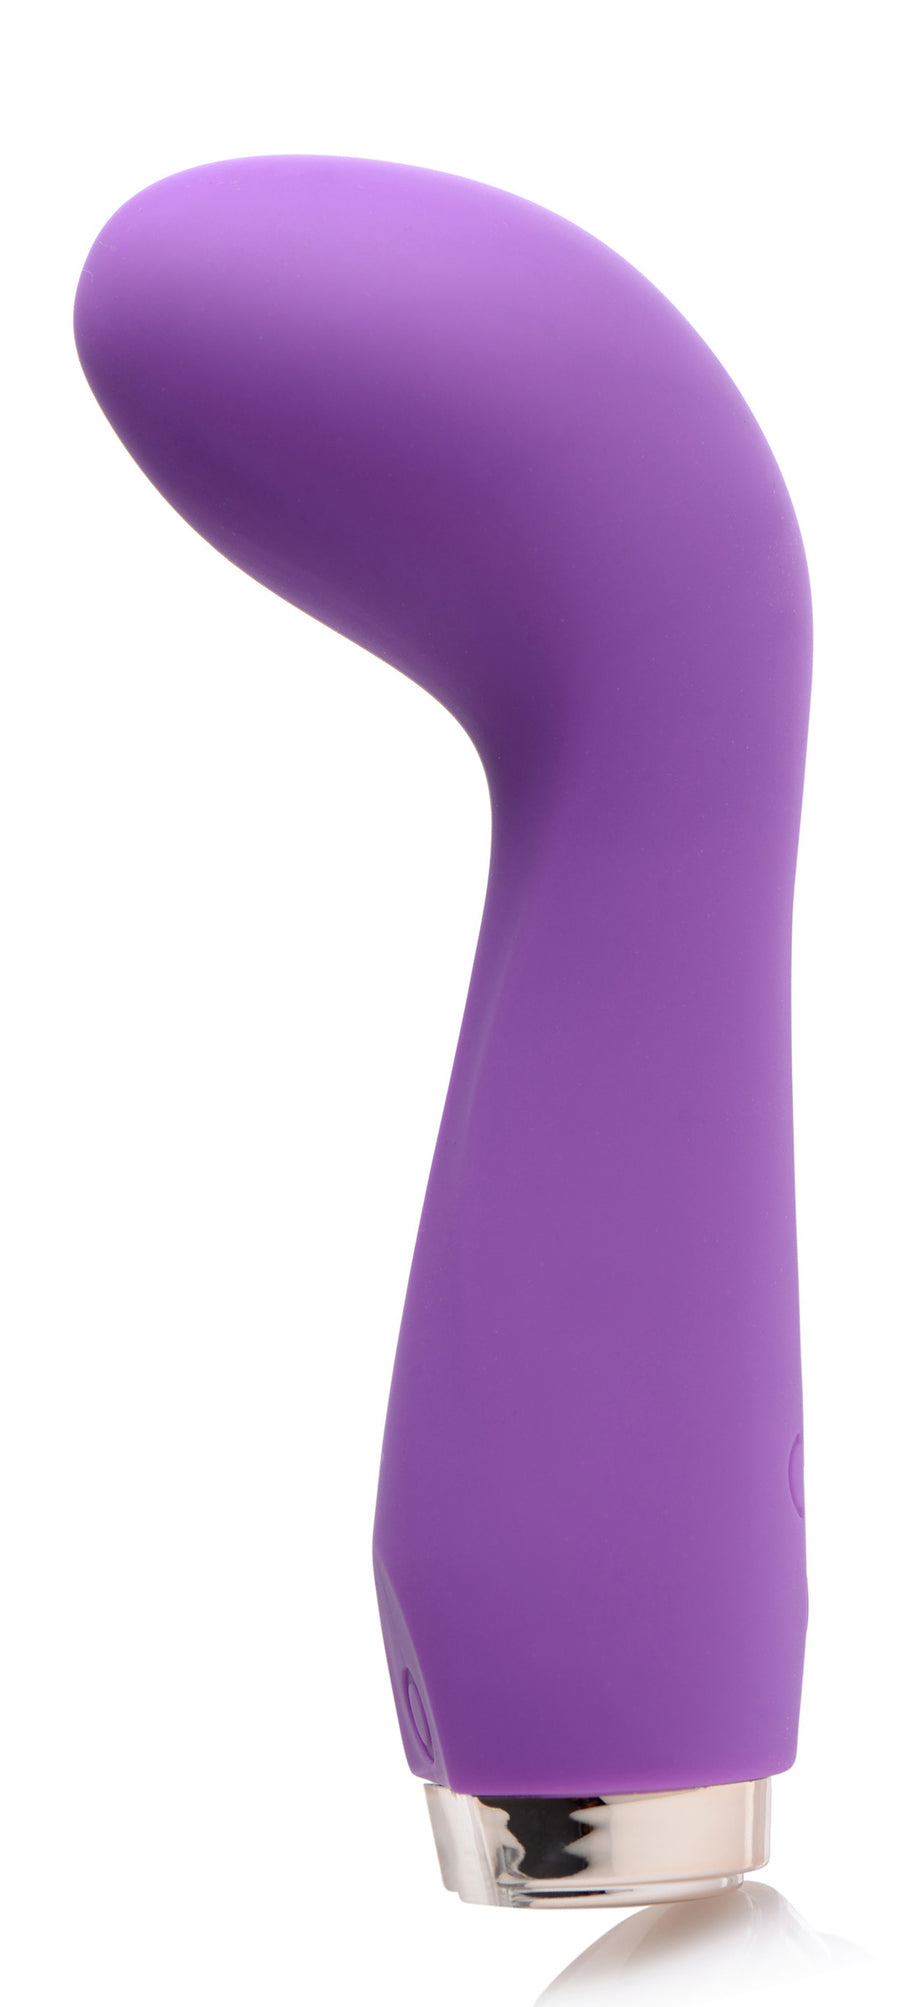 10X Delight G-Spot Silicone Vibrator - Purple - CN-04-0733-40 - UPC-653078941838